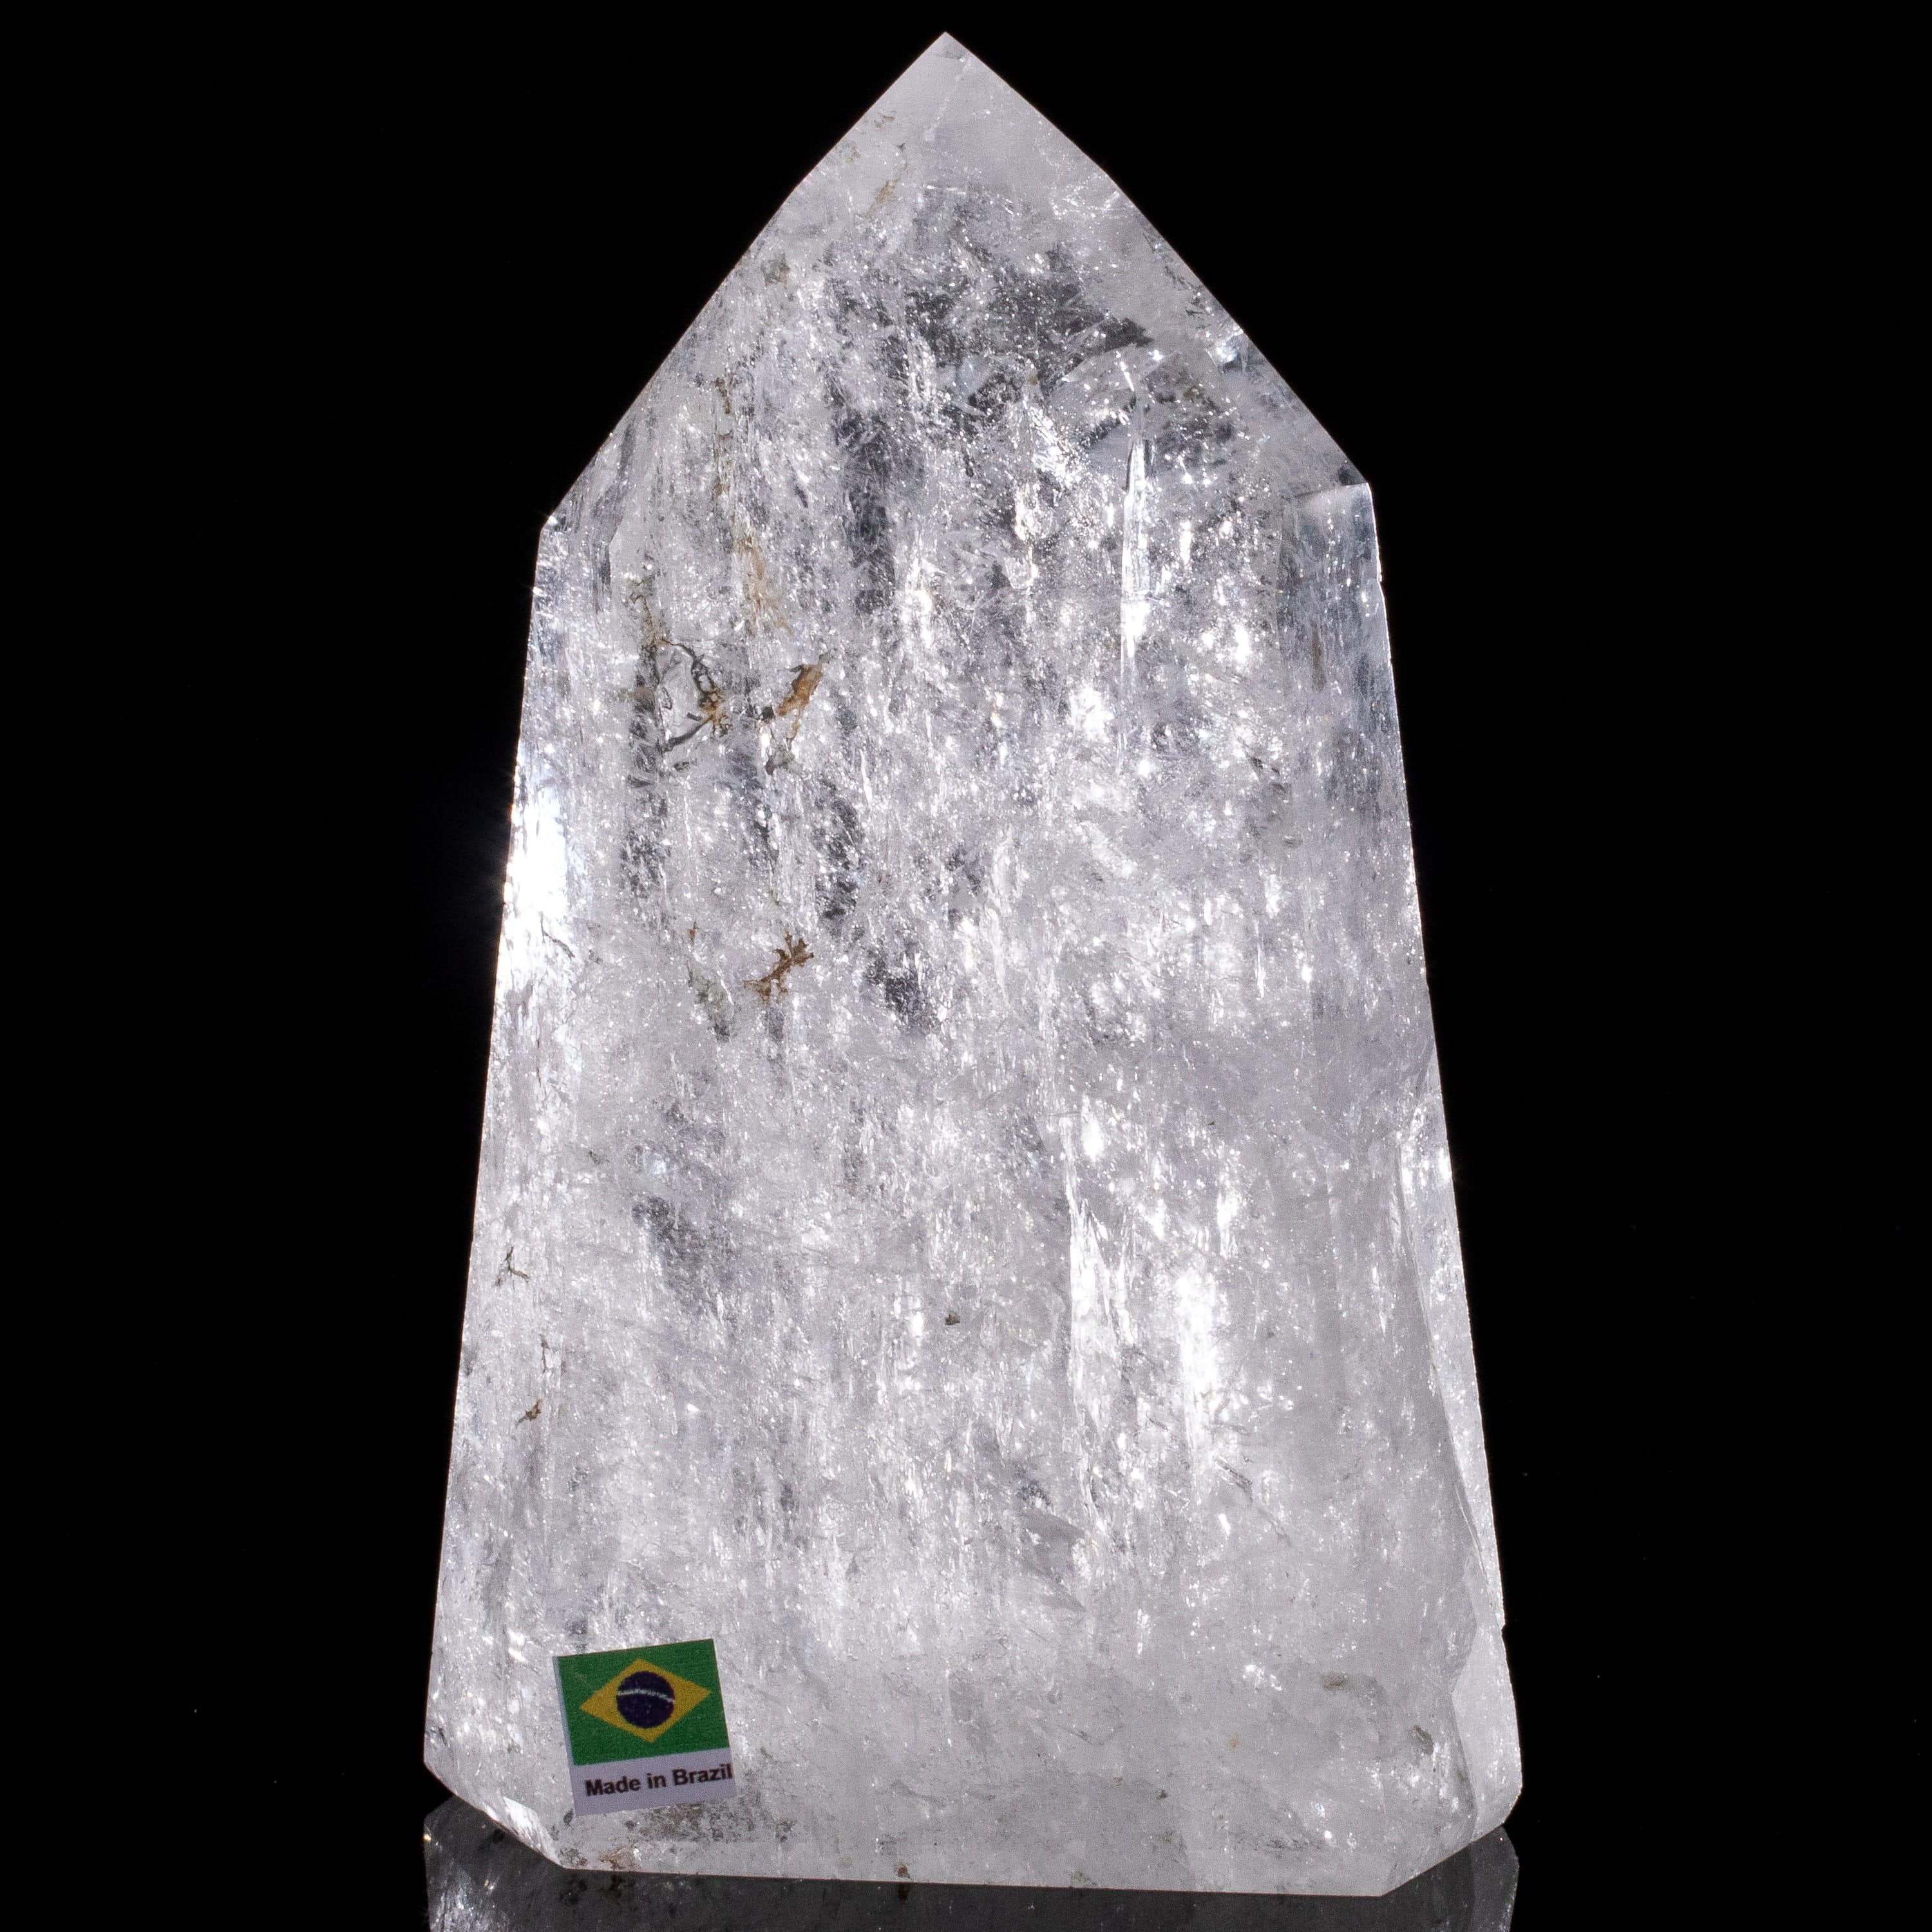 Kalifano Quartz Natural Quartz Obelisk from Brazil - 7" / 1,196 grams QZ1500.008